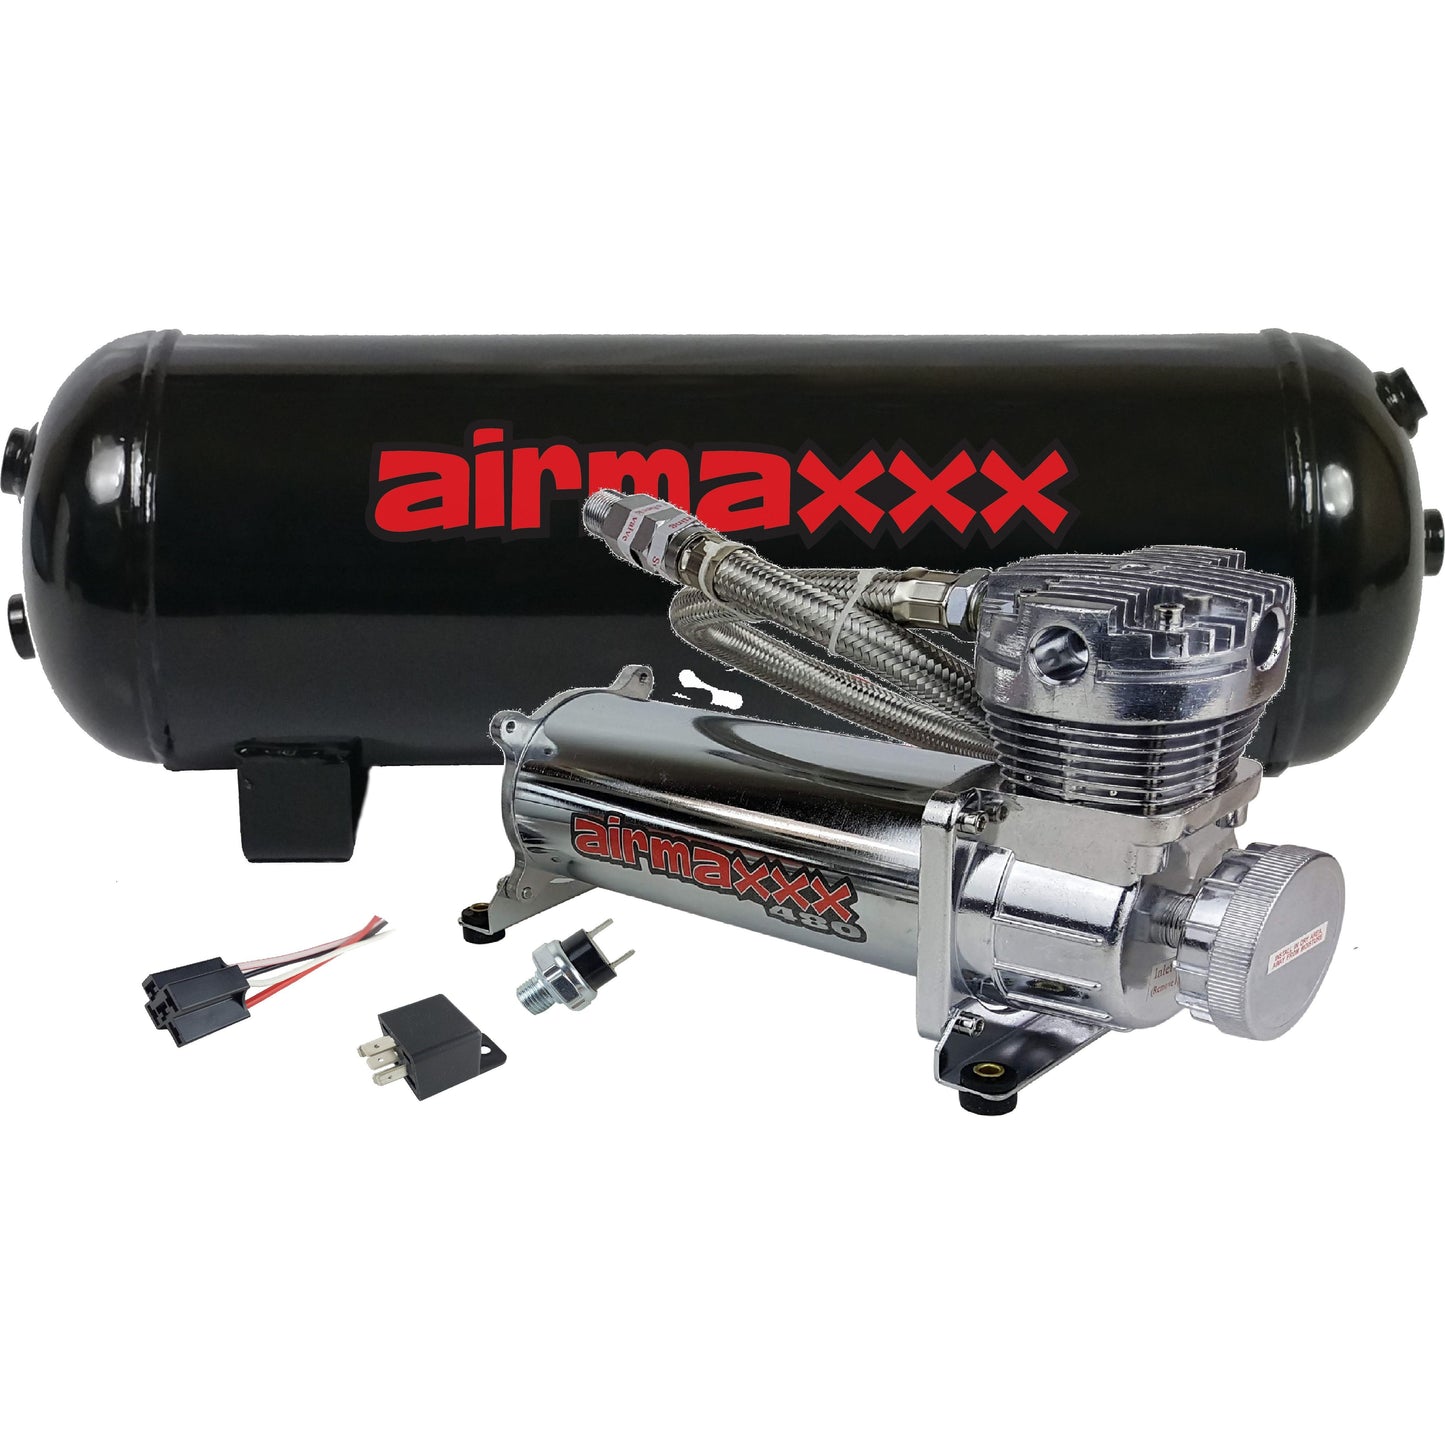 Air Compressor Chrome 480 airmaxxx & 3 Gallon Steel Air Tank